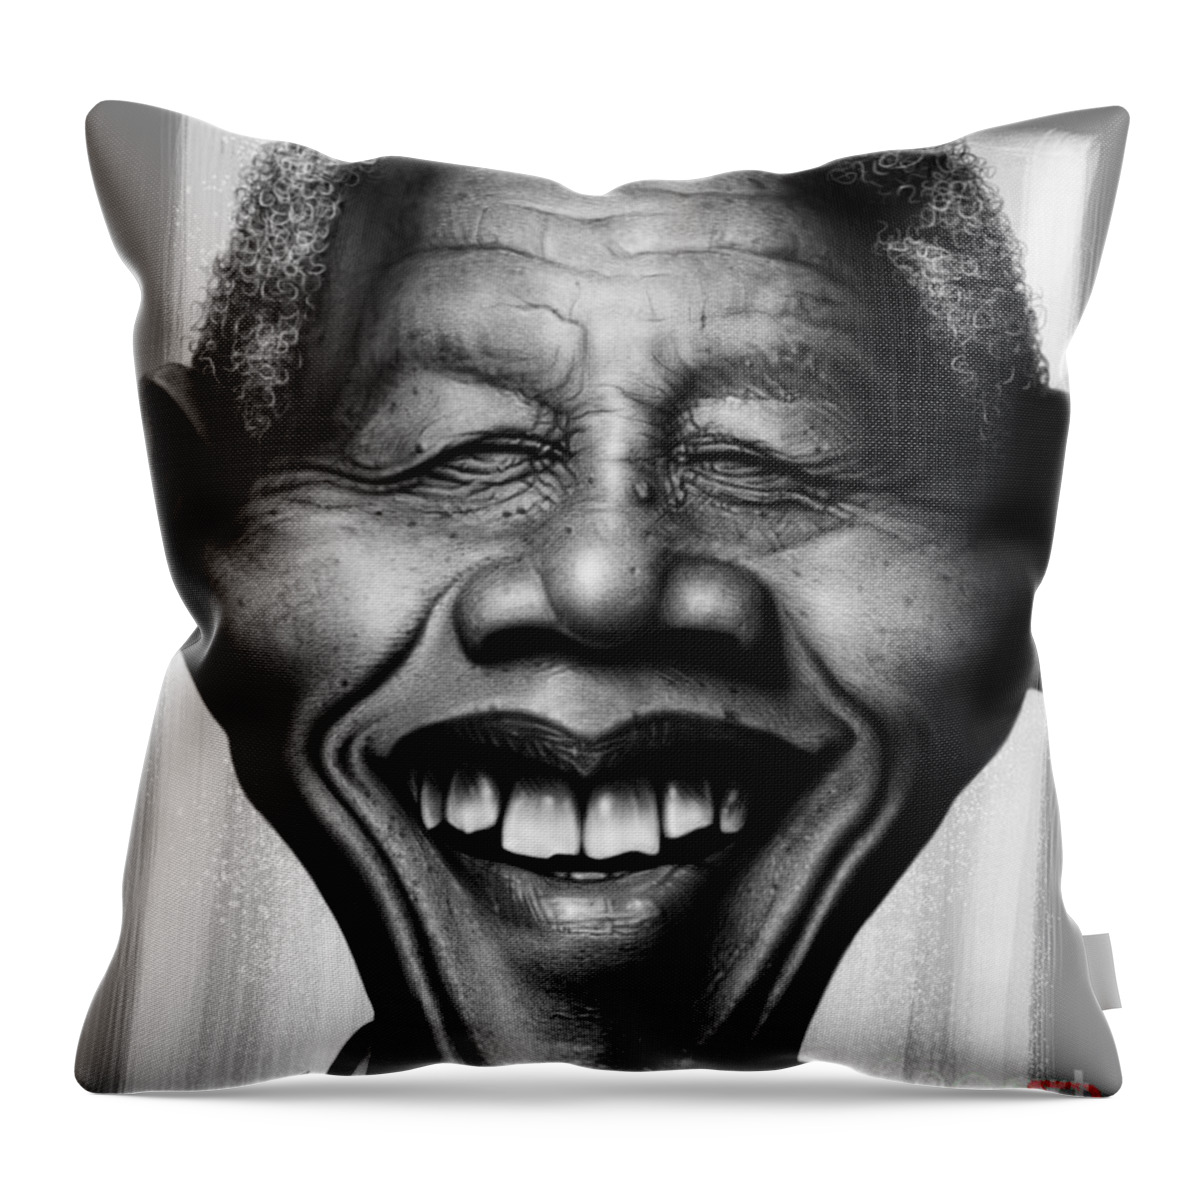 Nelson Mandela Throw Pillow featuring the digital art Nelson Mandela by Andre Koekemoer